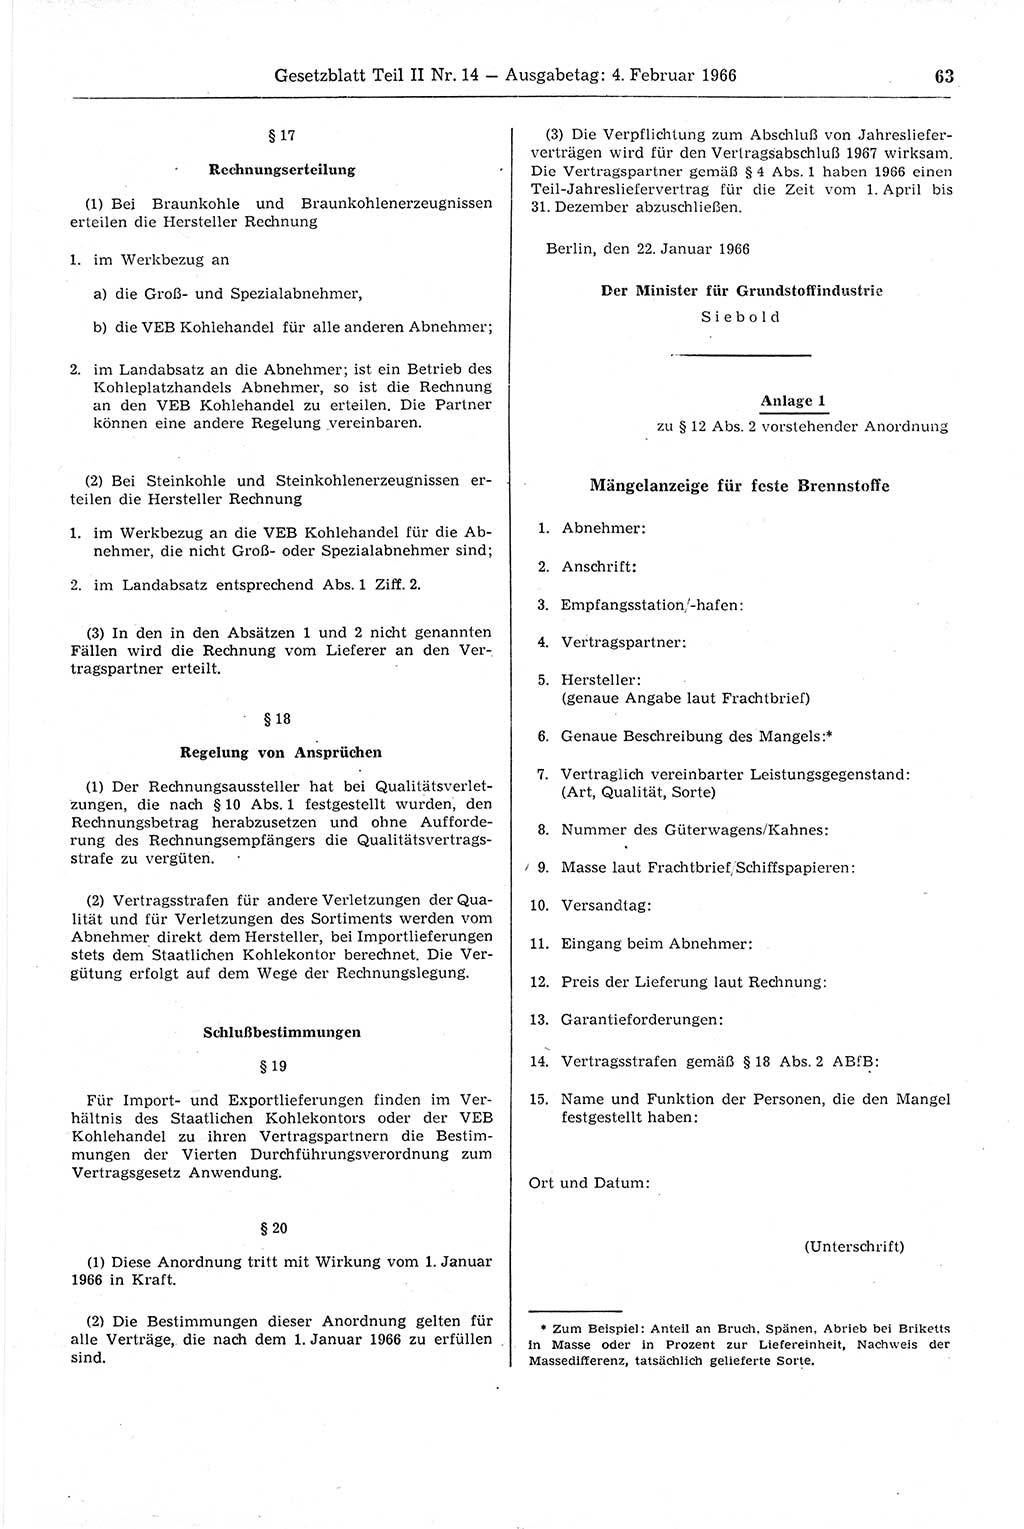 Gesetzblatt (GBl.) der Deutschen Demokratischen Republik (DDR) Teil ⅠⅠ 1966, Seite 63 (GBl. DDR ⅠⅠ 1966, S. 63)